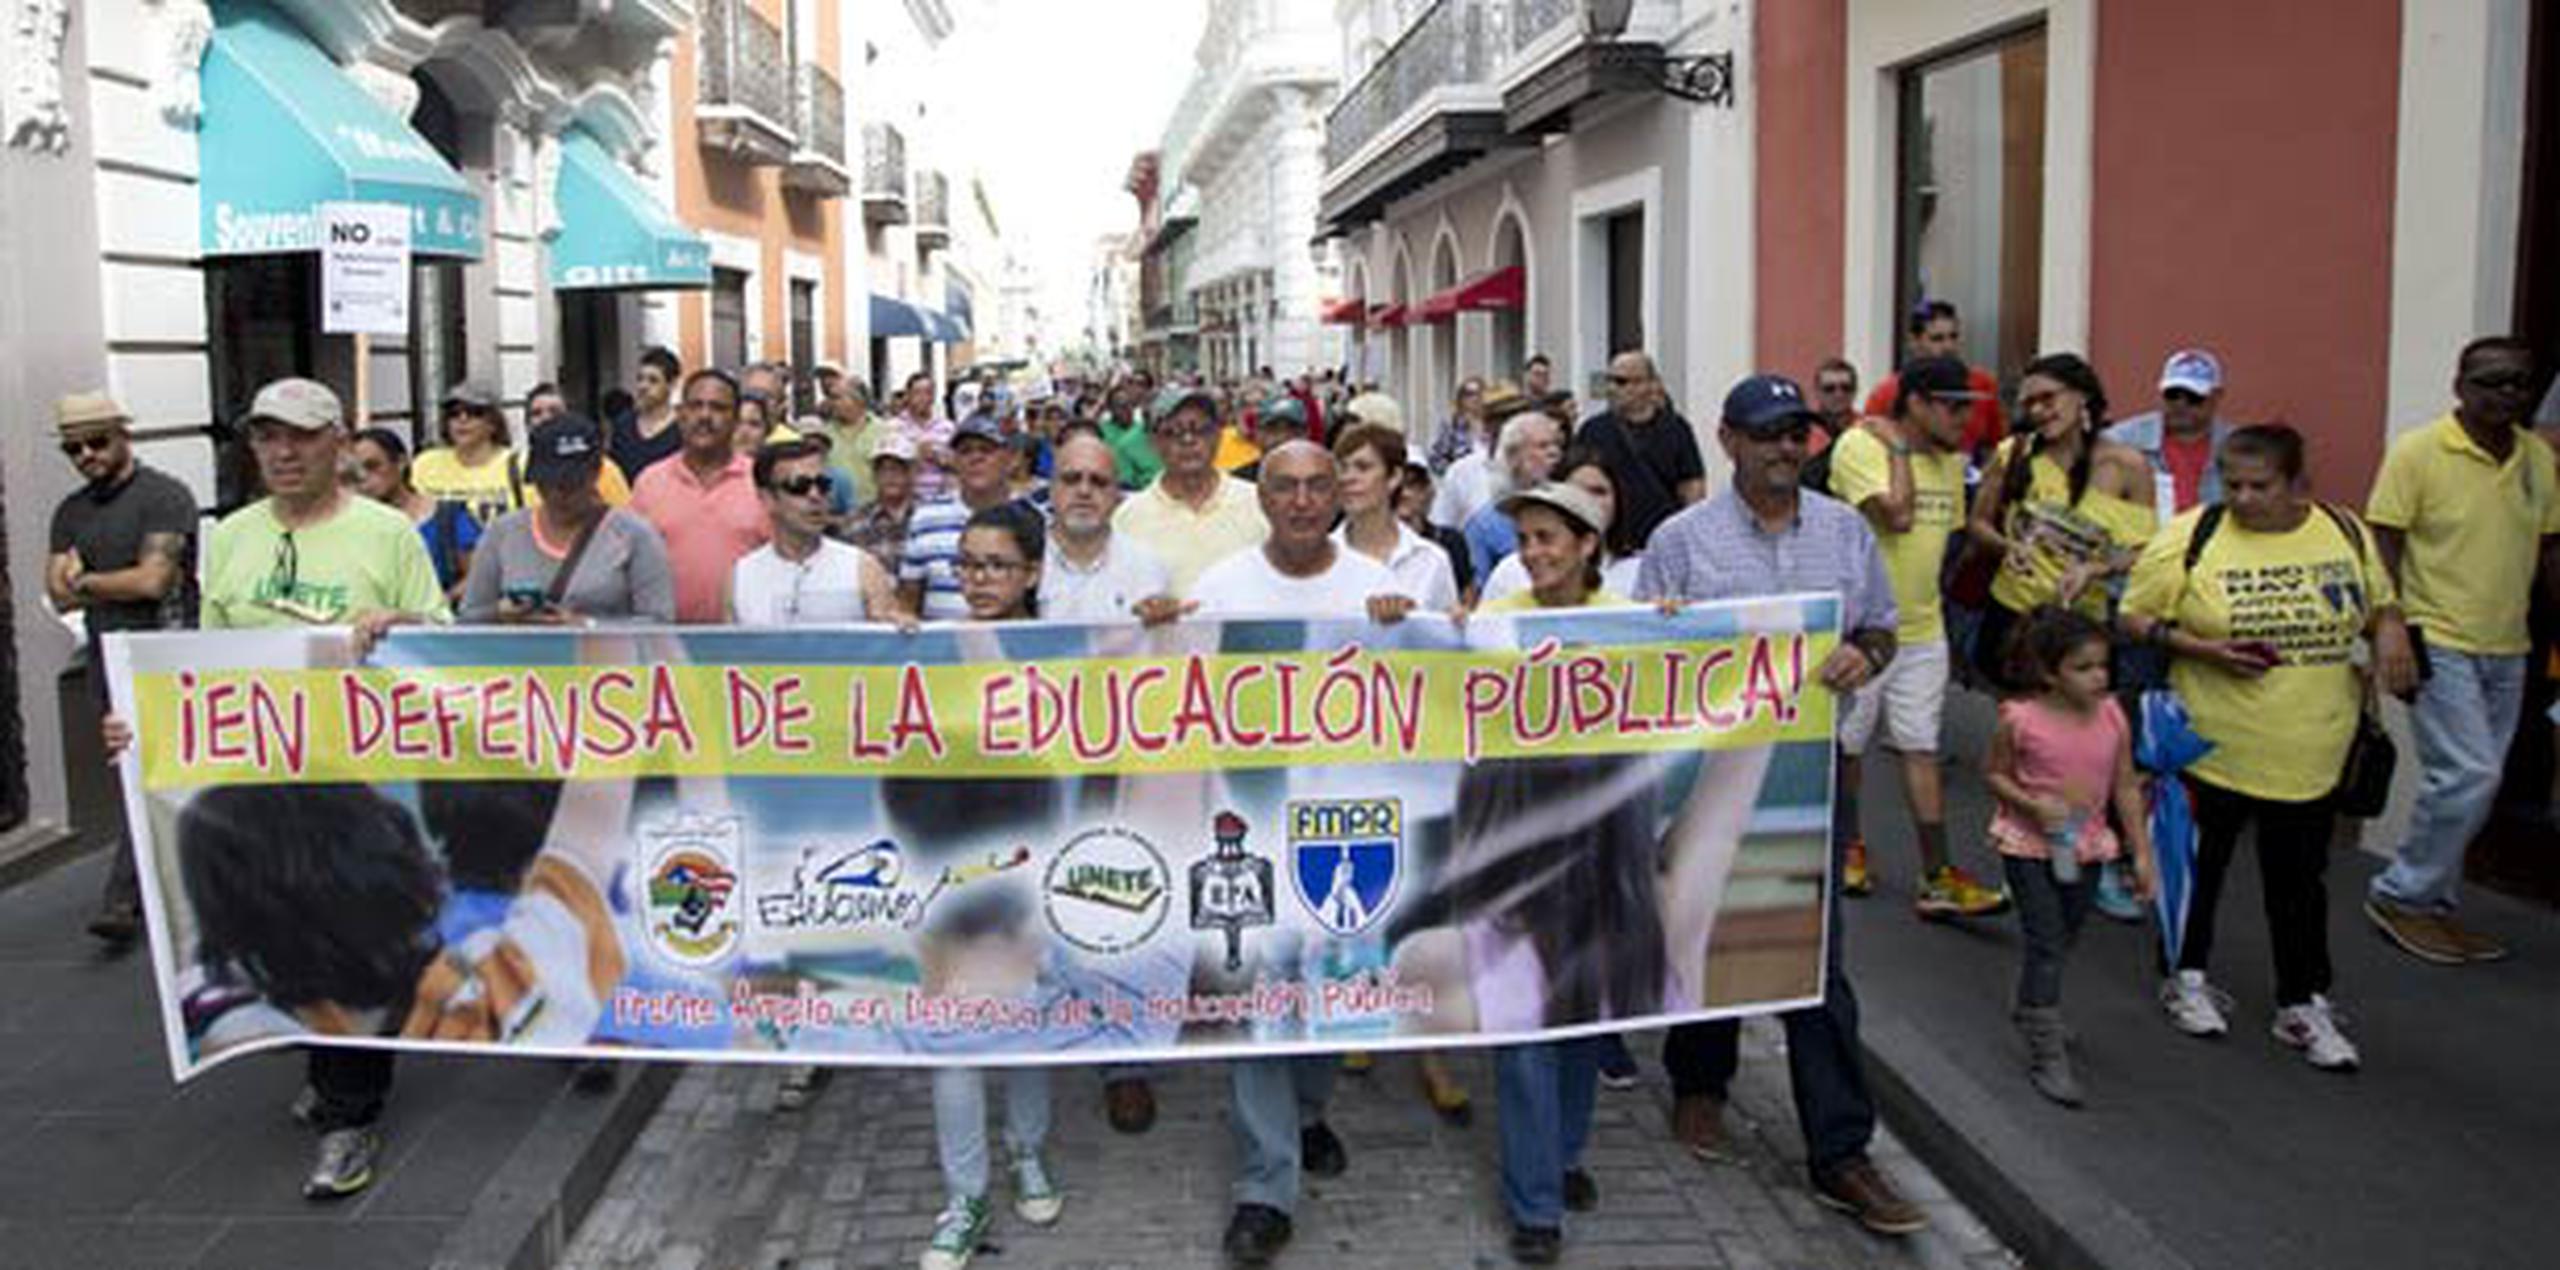 Los manifestantes caminaron desde la Plaza Colón hasta la intersección de la calle Cristo con La Fortaleza. (tonito.zayas@gfrmedia.com)